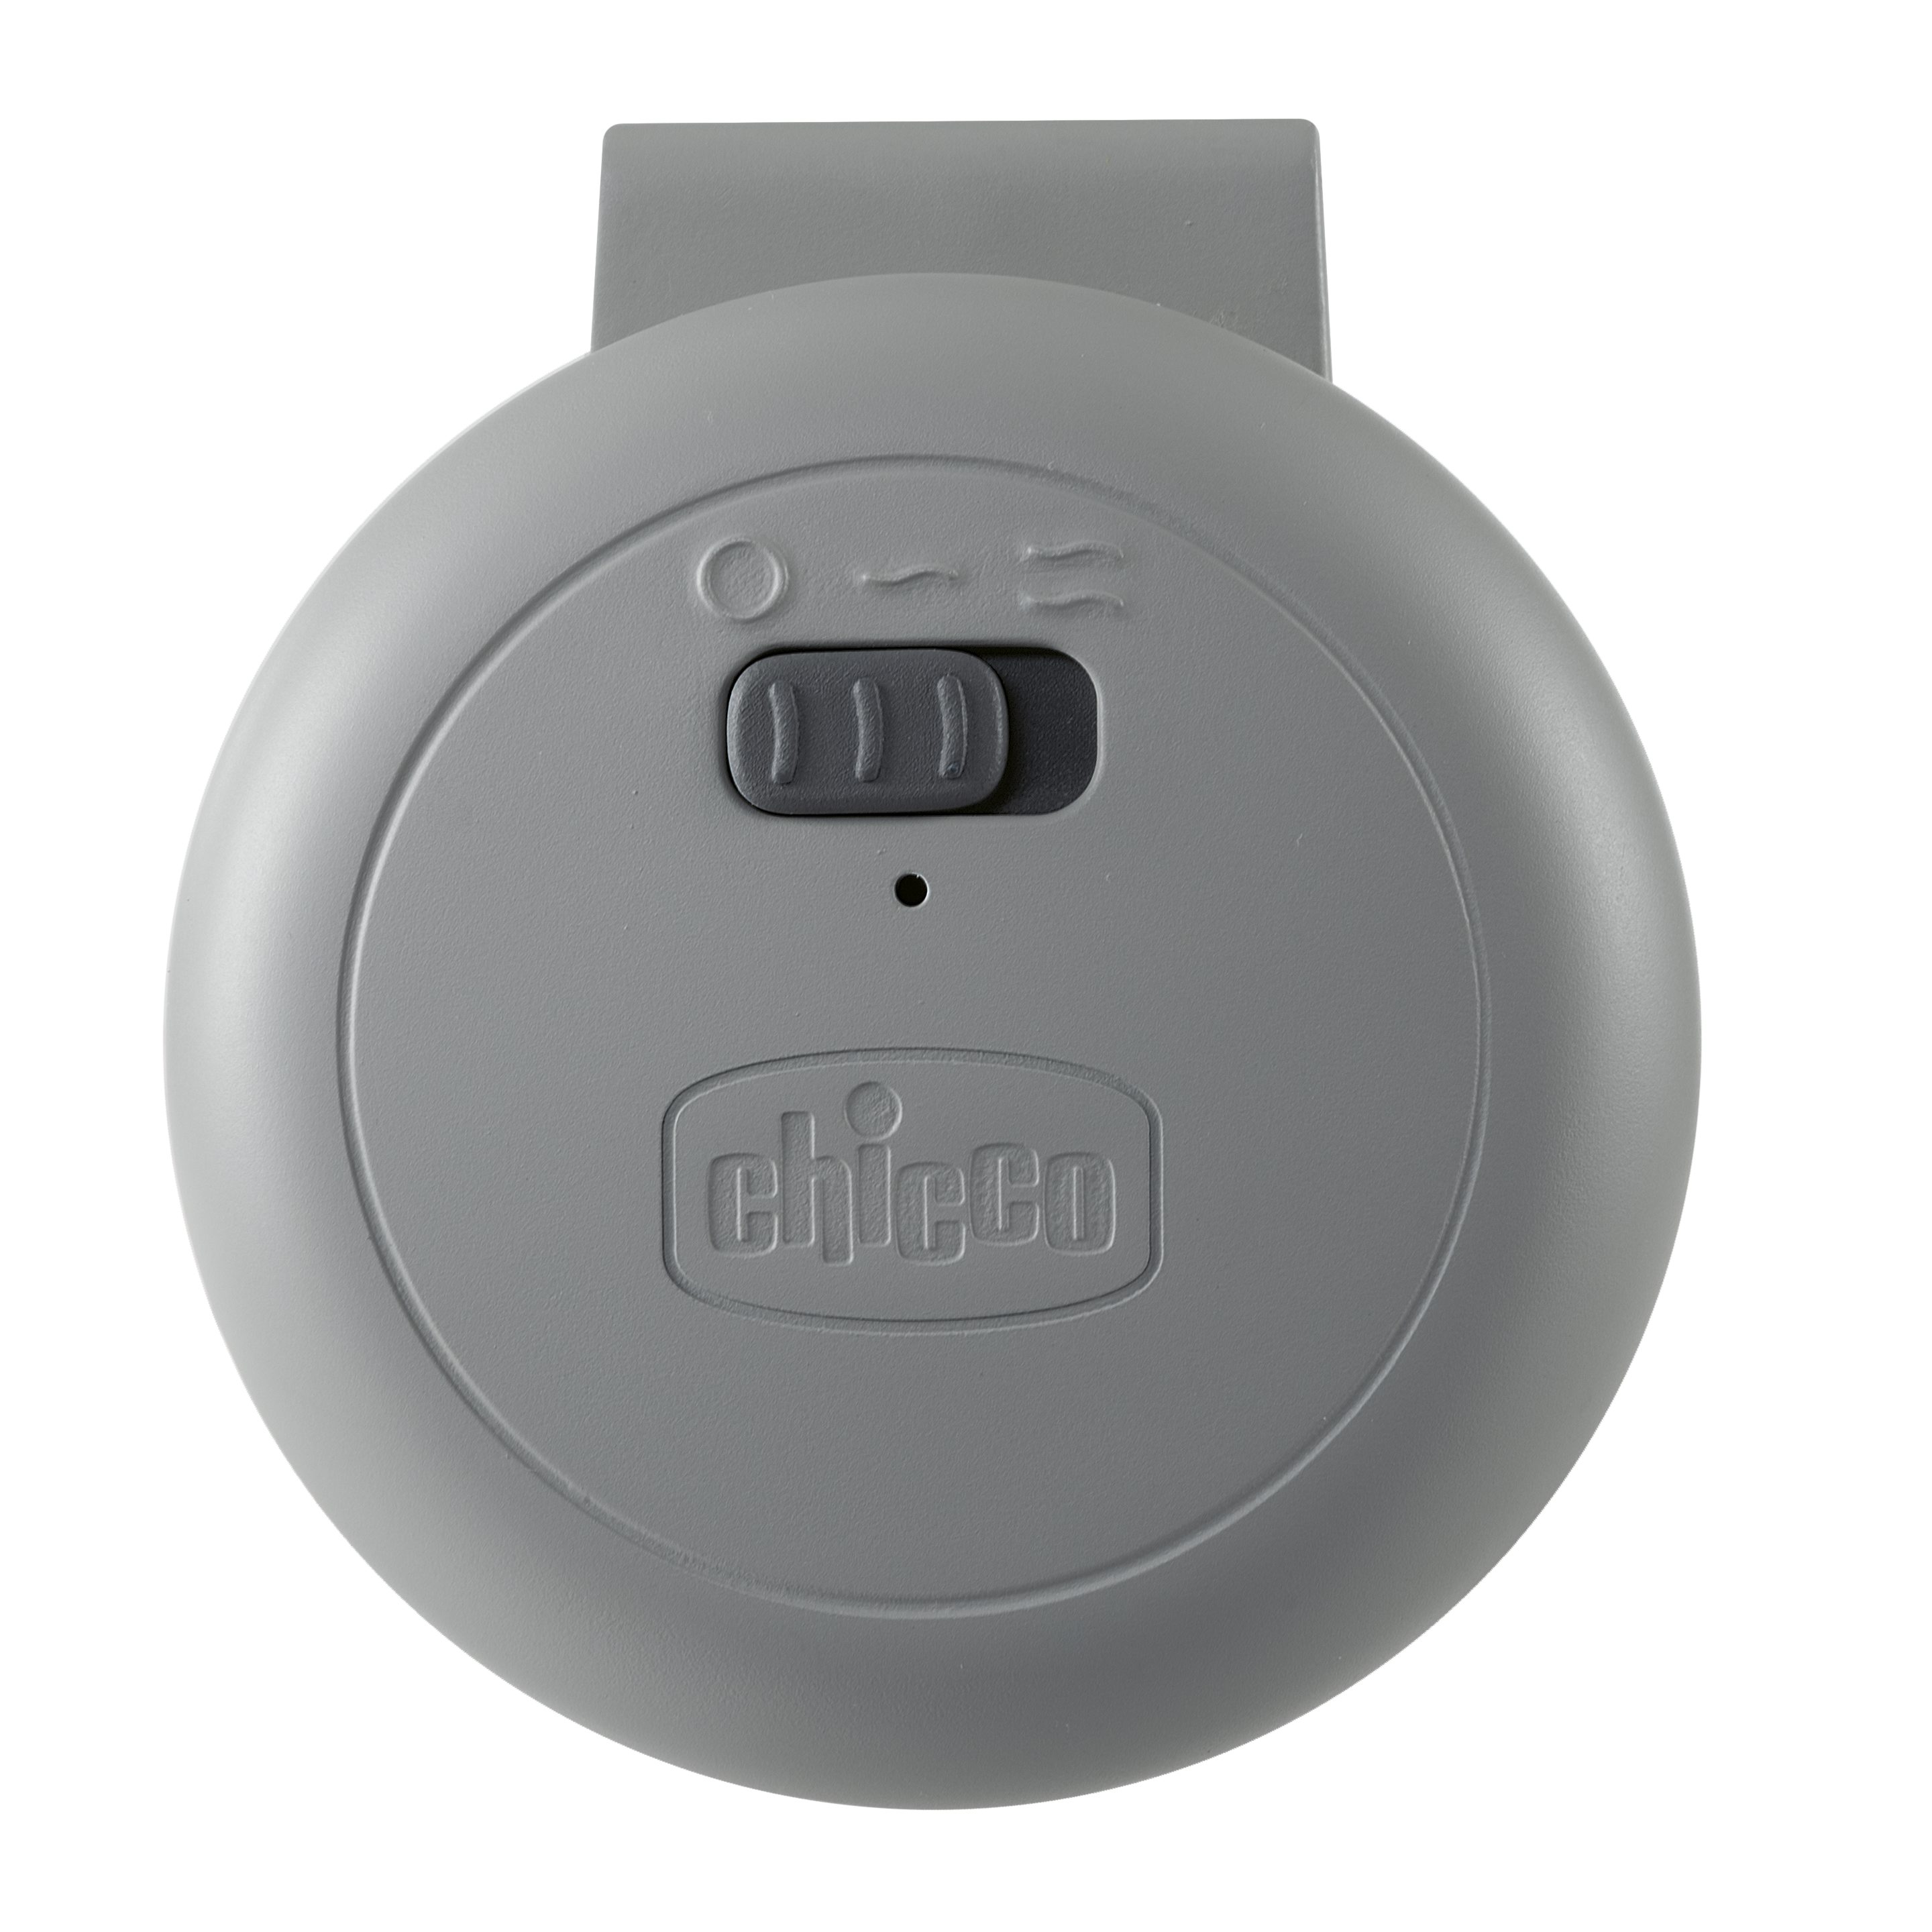 Dispozitiv Chicco cu vibratii pentru calmare (Baby Hug si Nex2Me) accesorii imagine noua